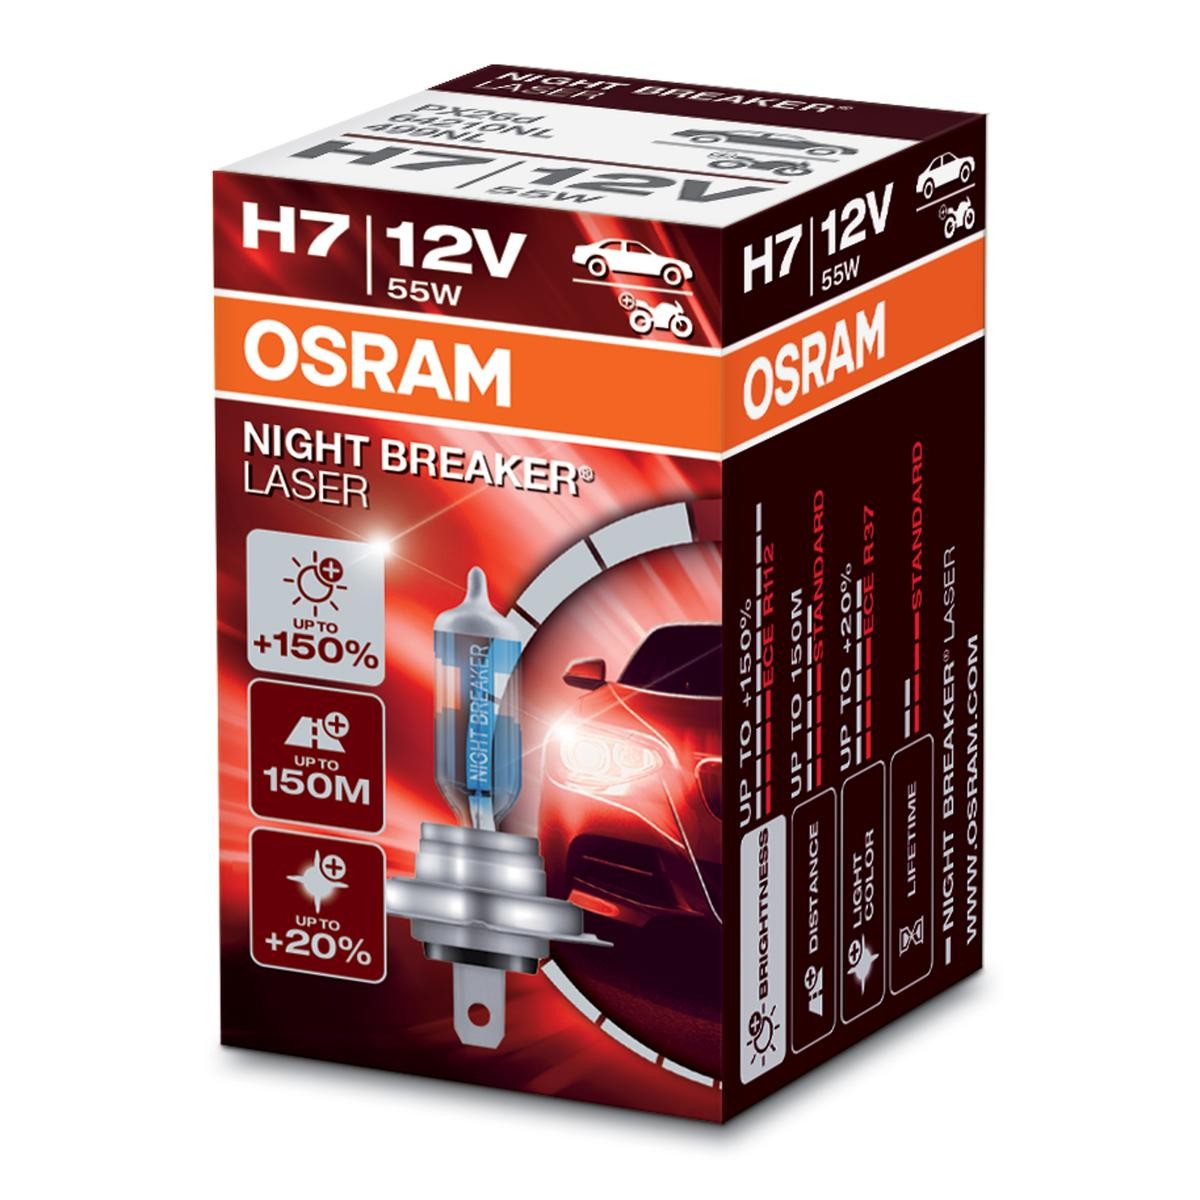 Glühlampe H7 Ultra Life OSRAM 64210ULT-01B